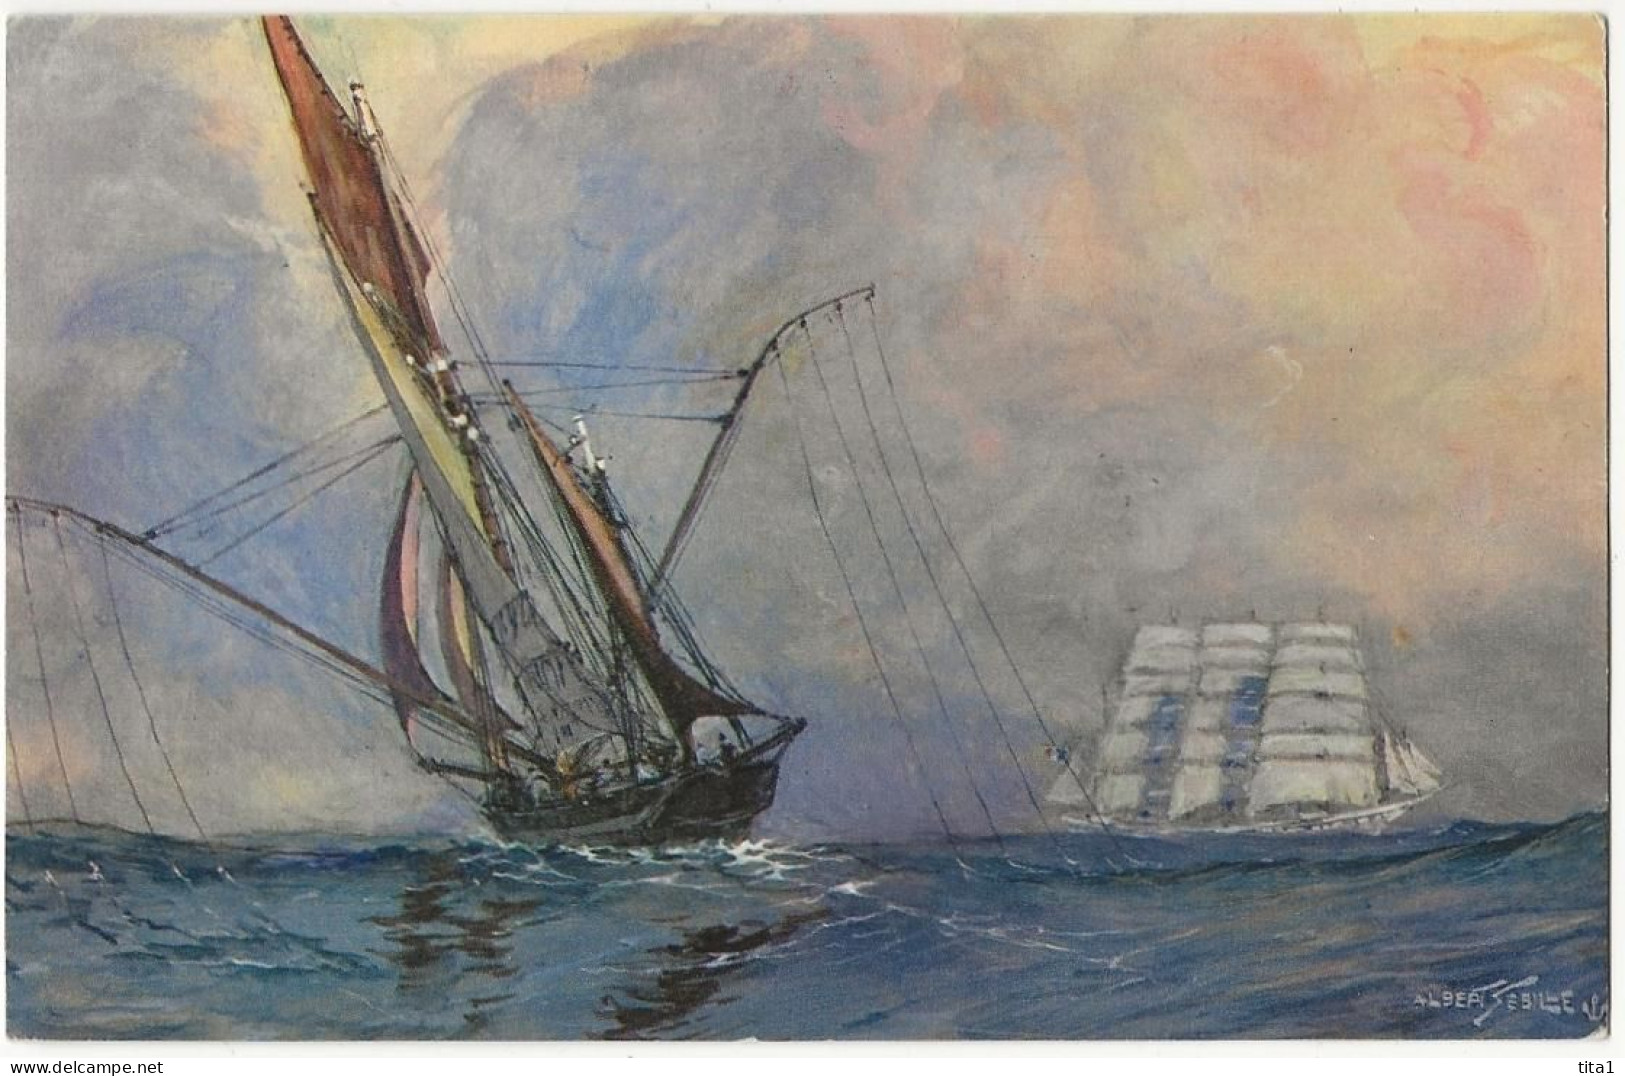 120 - Thonier Sur Les Lieux De Pêche Les Lignes à La Mer ( Dessin De A. Sebille) - Sailing Vessels